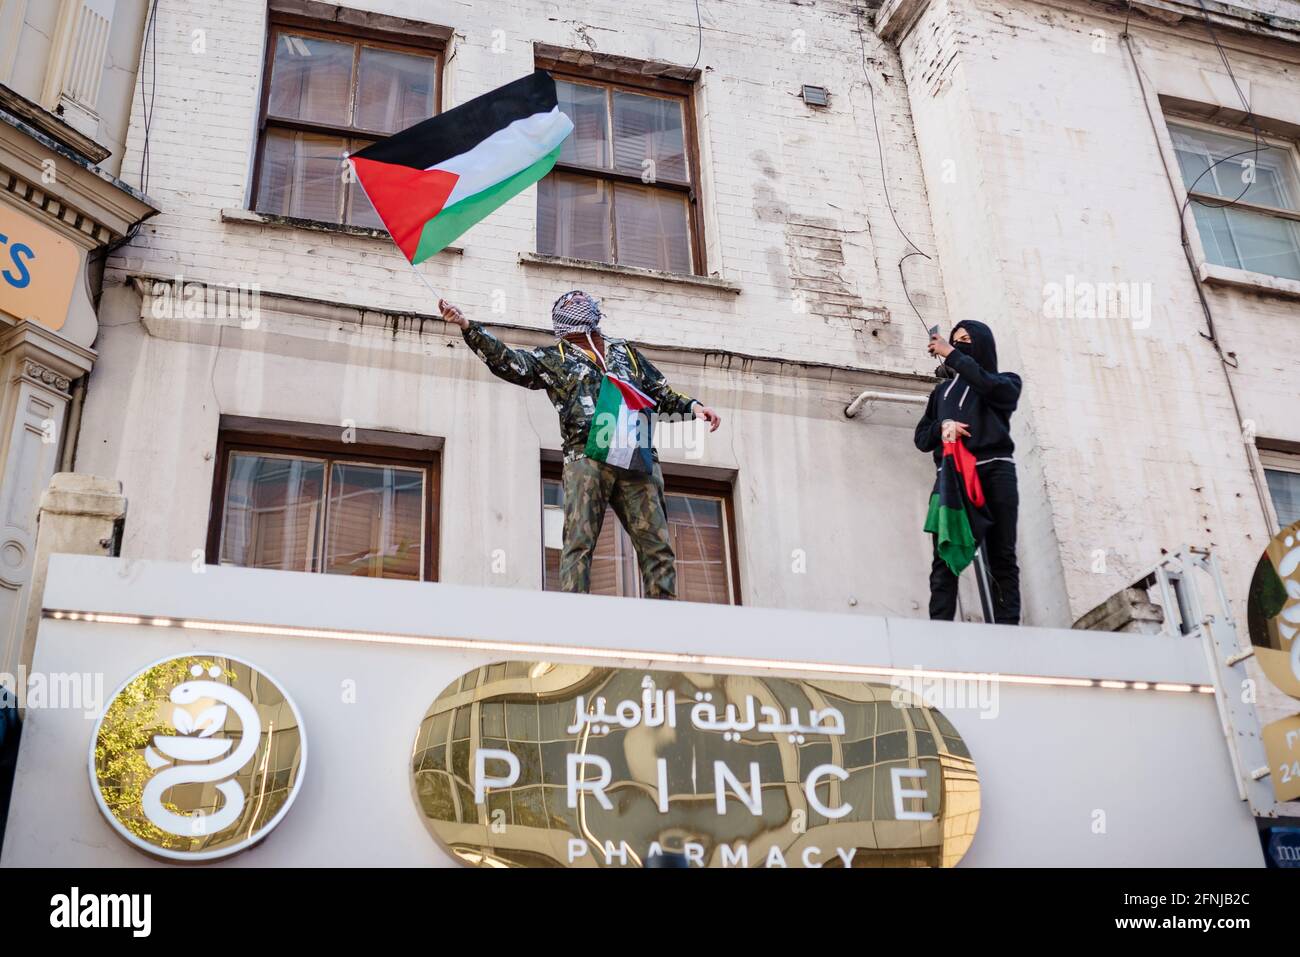 Londra, Regno Unito. 15 maggio 2021. I manifestanti pro-Palestina marciano a Londra da Marble Arch all'ambasciata israeliana contro lo sfratto israeliano dei palestinesi Foto Stock